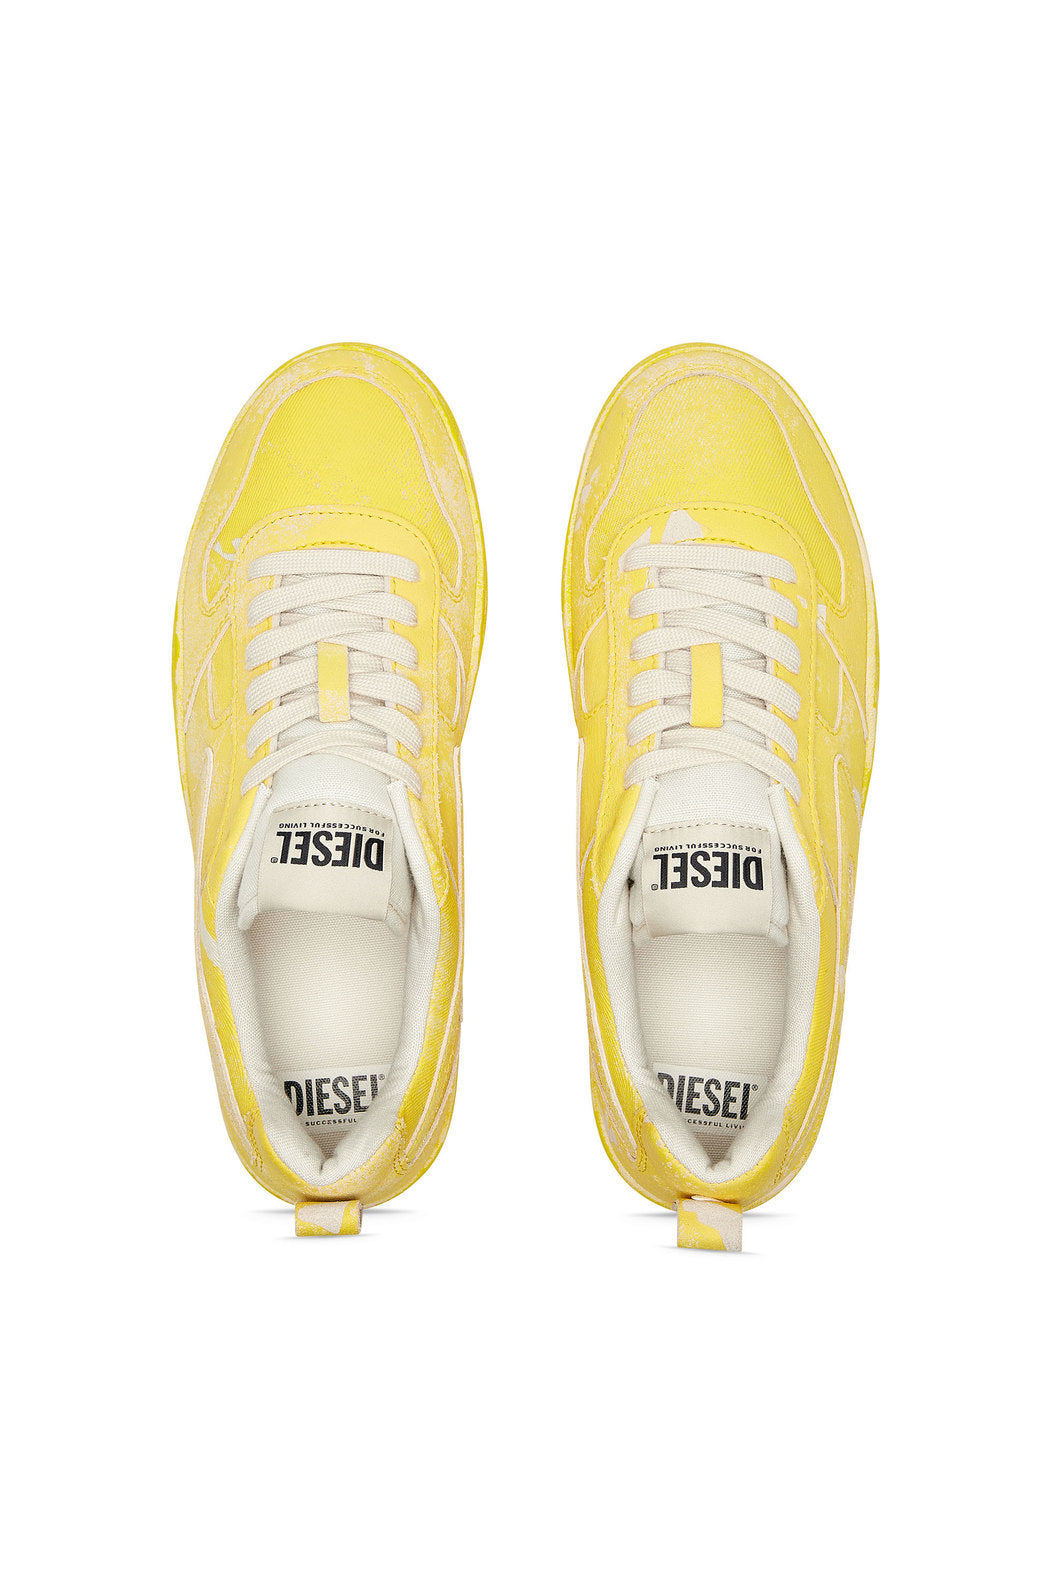 Diesel Y03024P5578 Mens S-Ukiyo V2 Low Sneakers Yellow